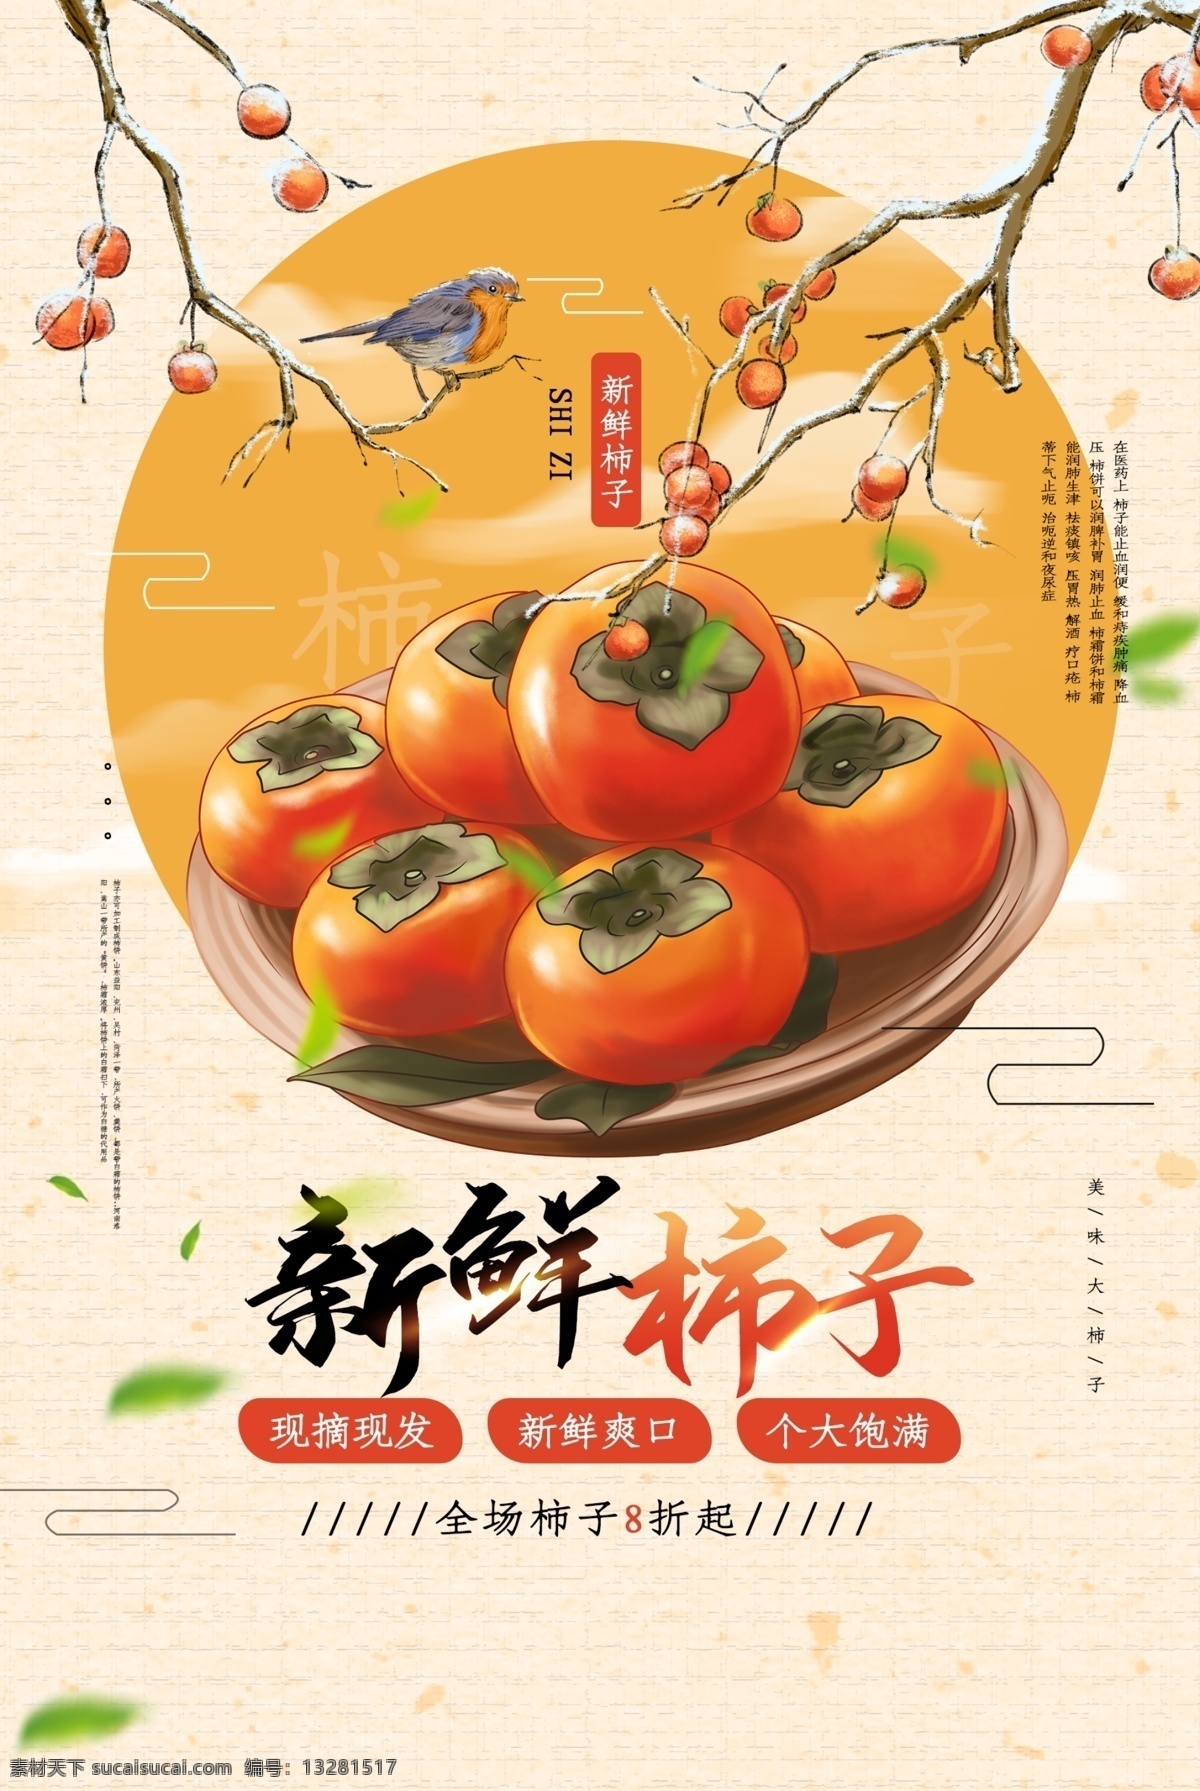 新鲜 柿子 美食 活动 宣传海报 素材图片 新鲜柿子 宣传 海报 餐饮美食 类